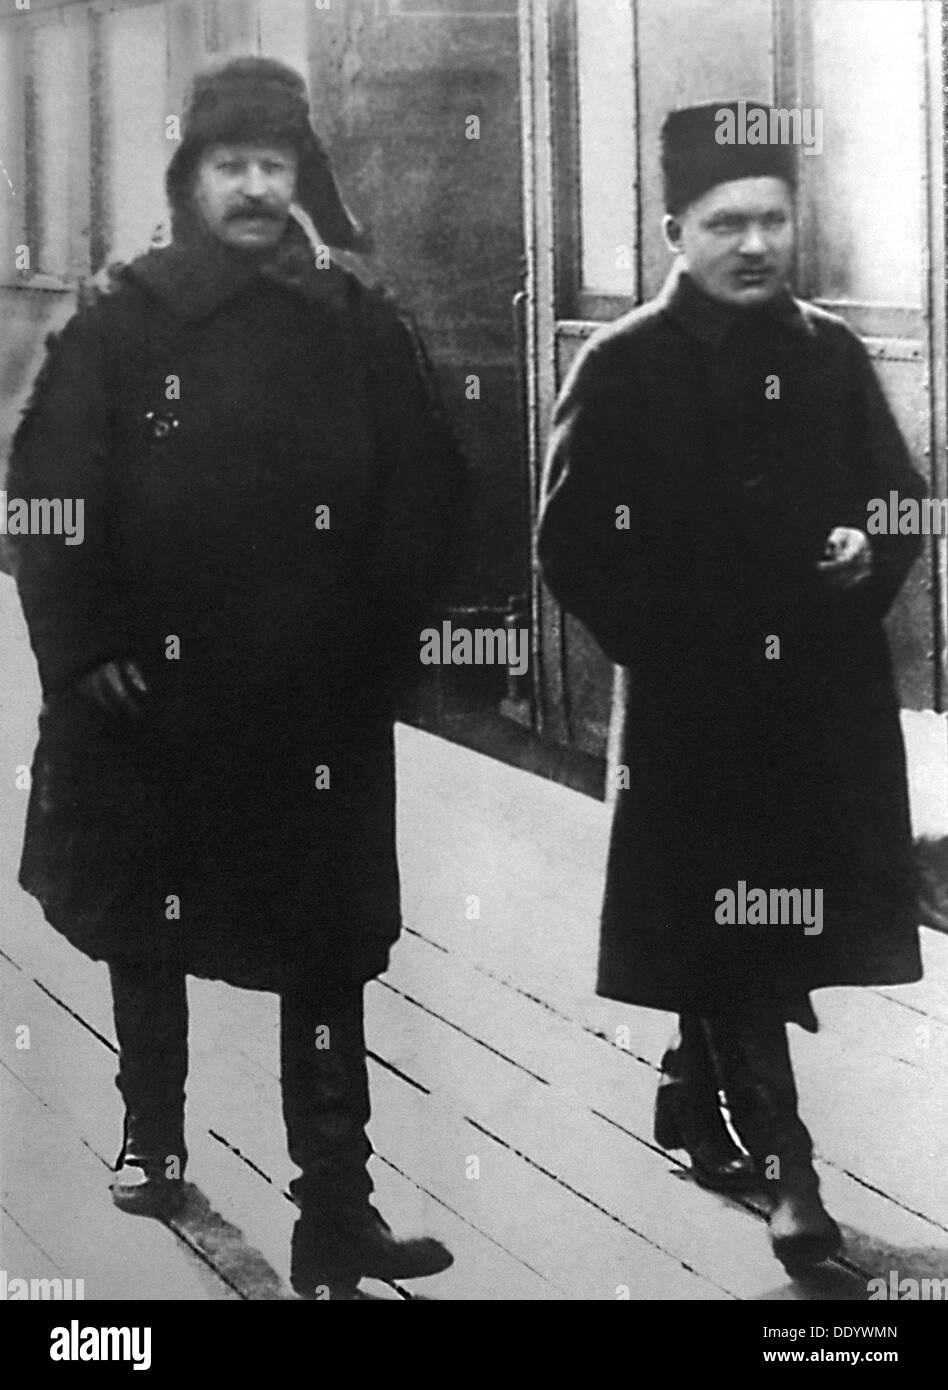 Les dirigeants soviétique Joseph Staline et Sergueï Kirov, Moscou, URSS, 1928. Artiste : Anon Banque D'Images